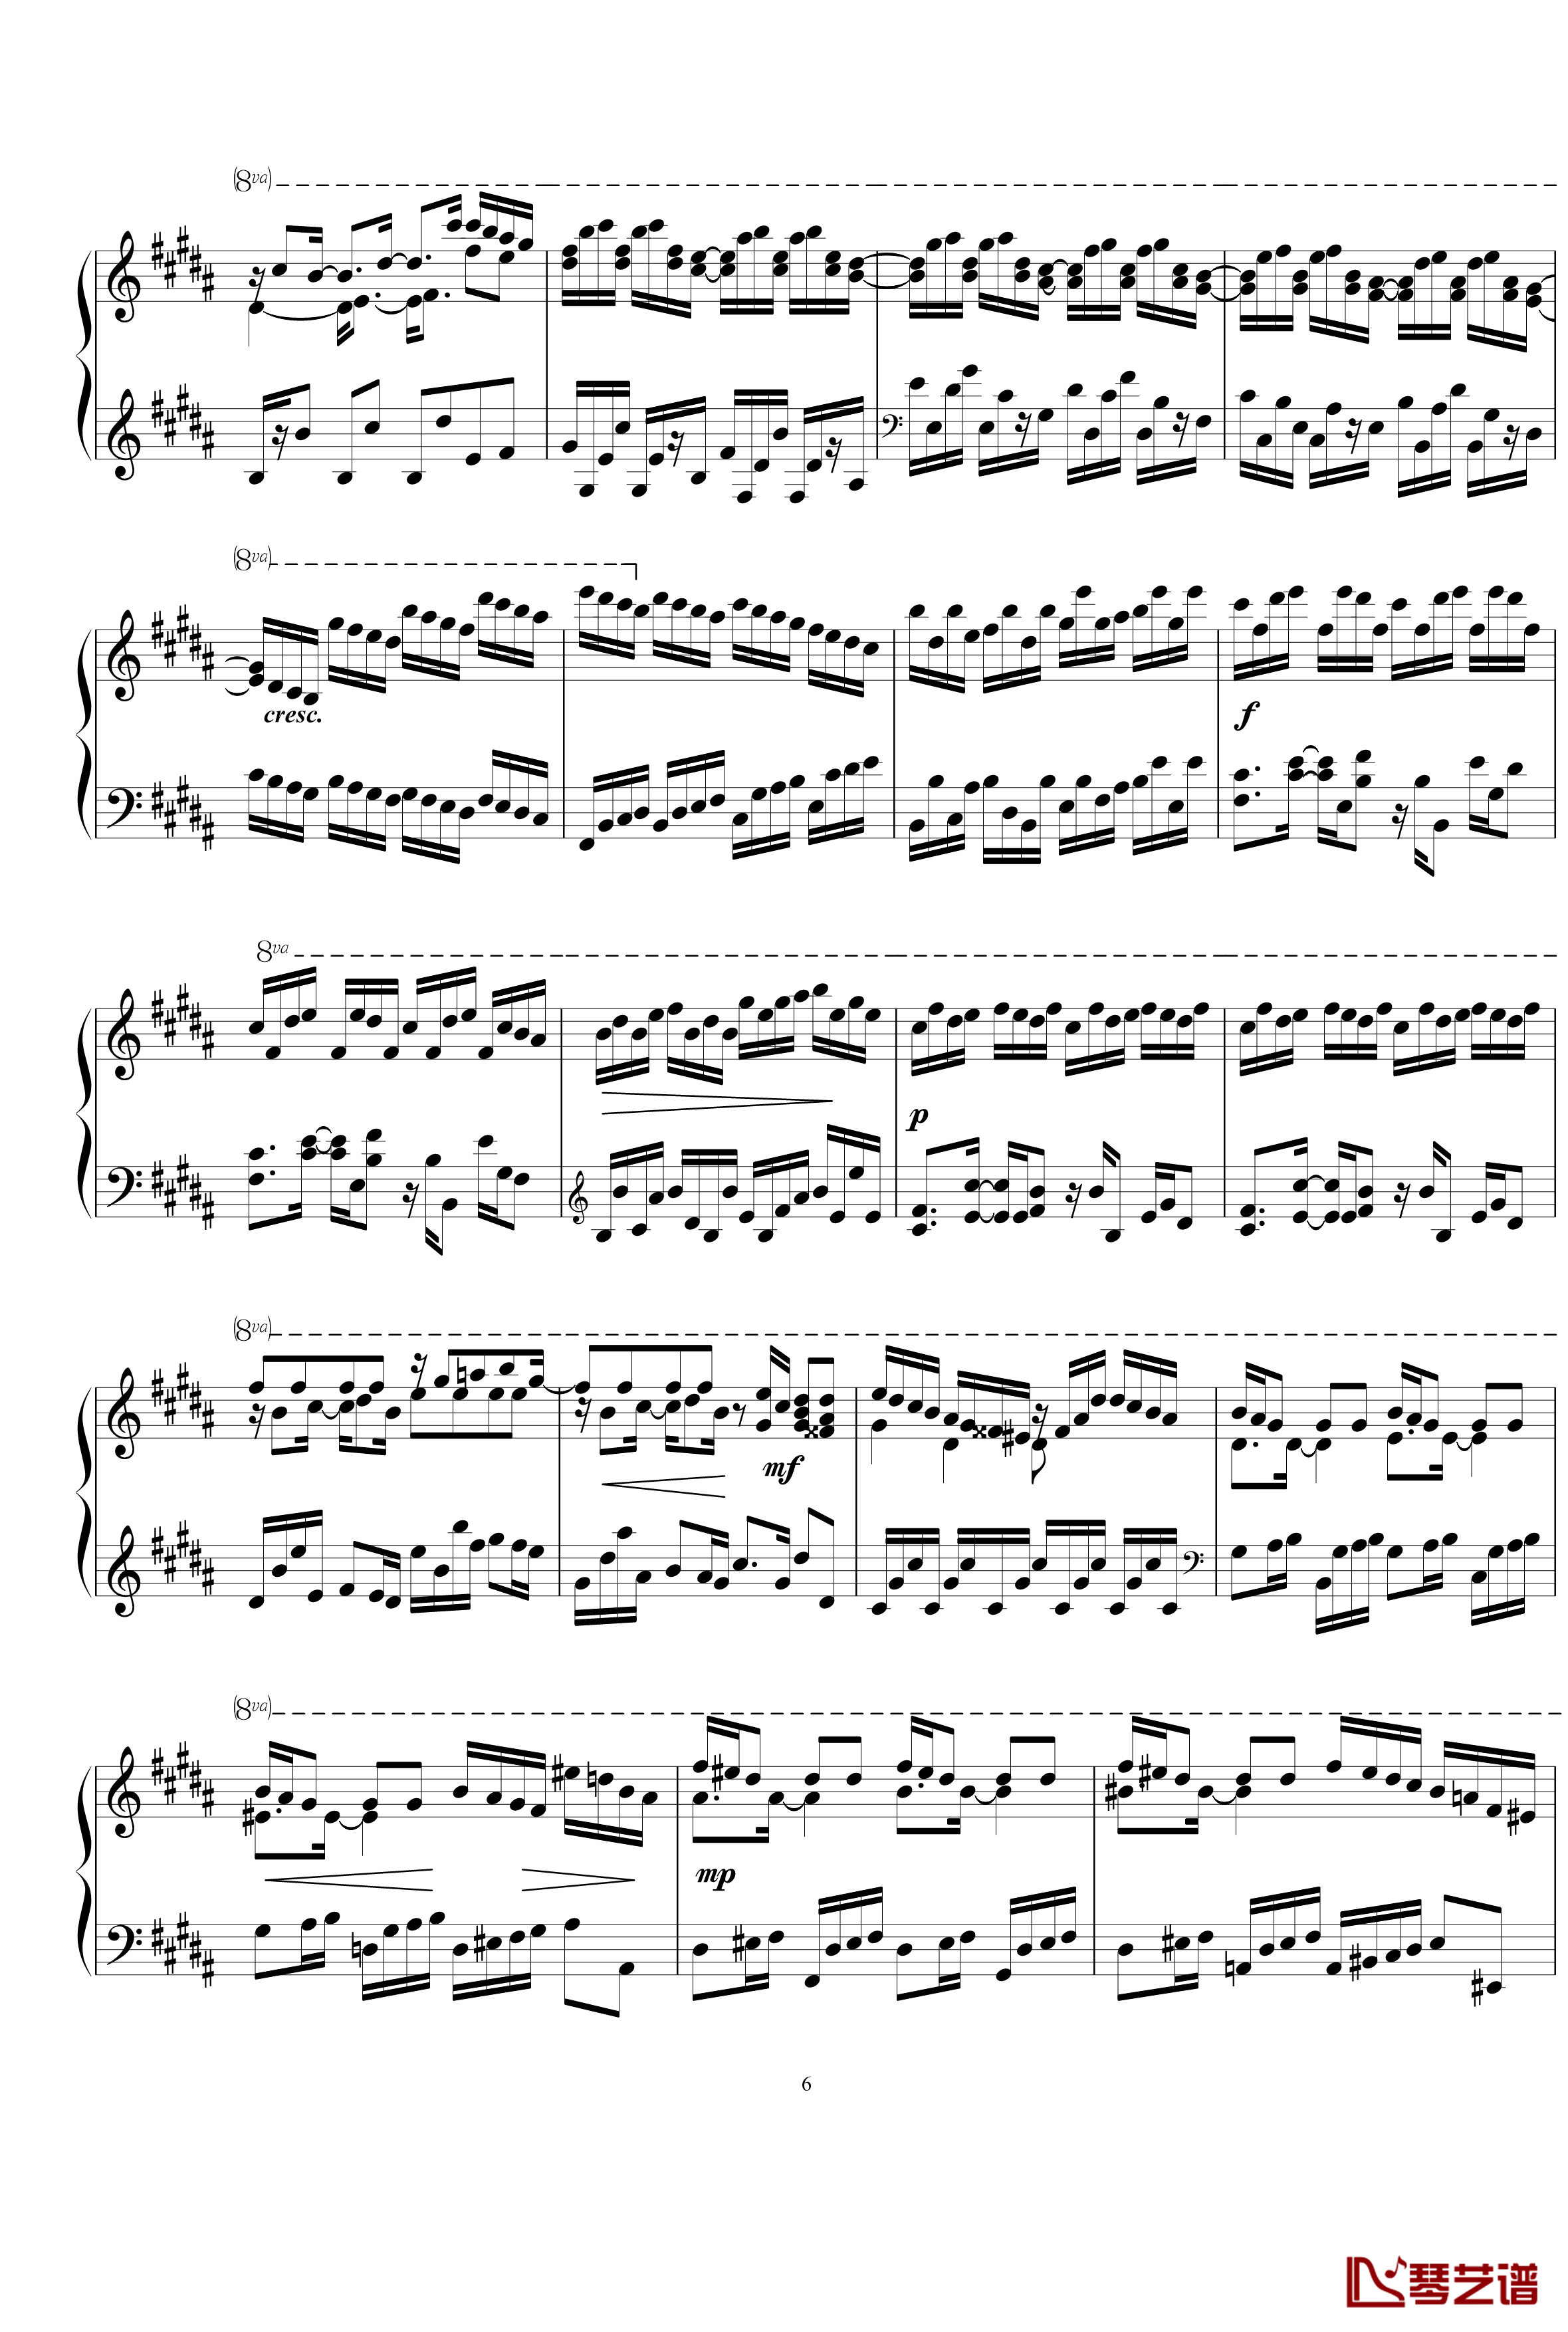 练习曲钢琴谱1.5-gzf1356